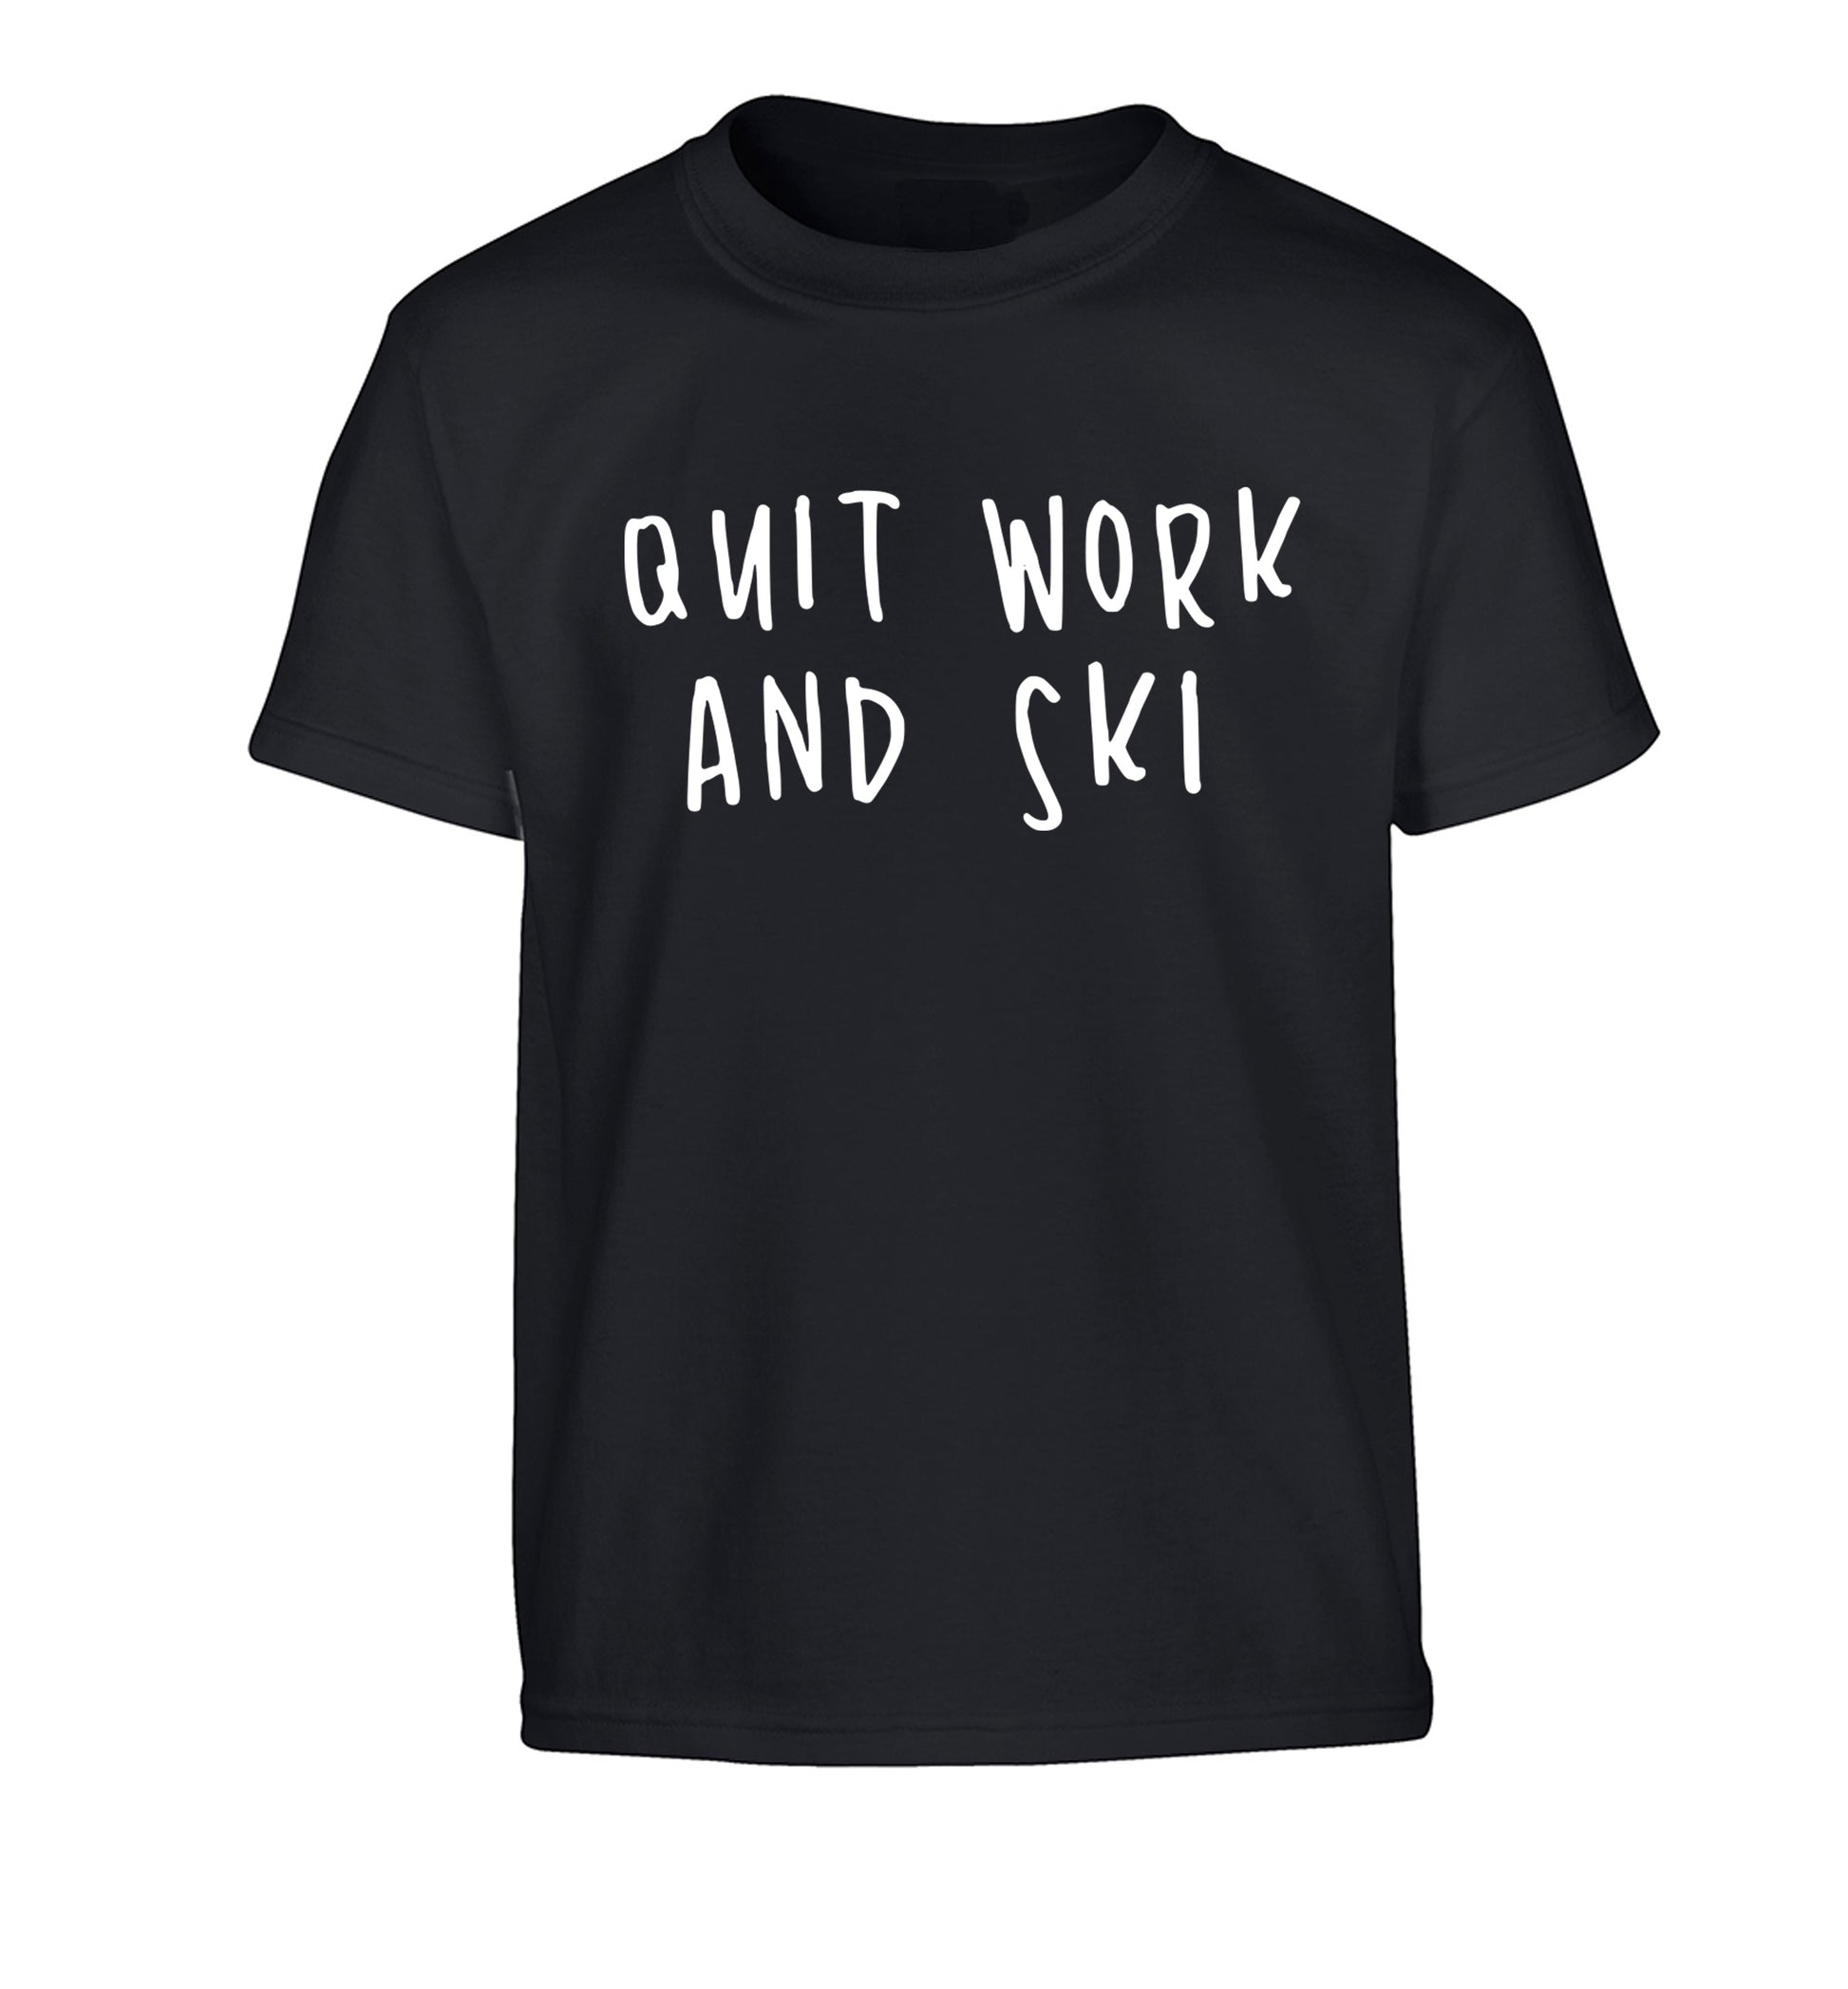 Quit work and ski Children's black Tshirt 12-14 Years